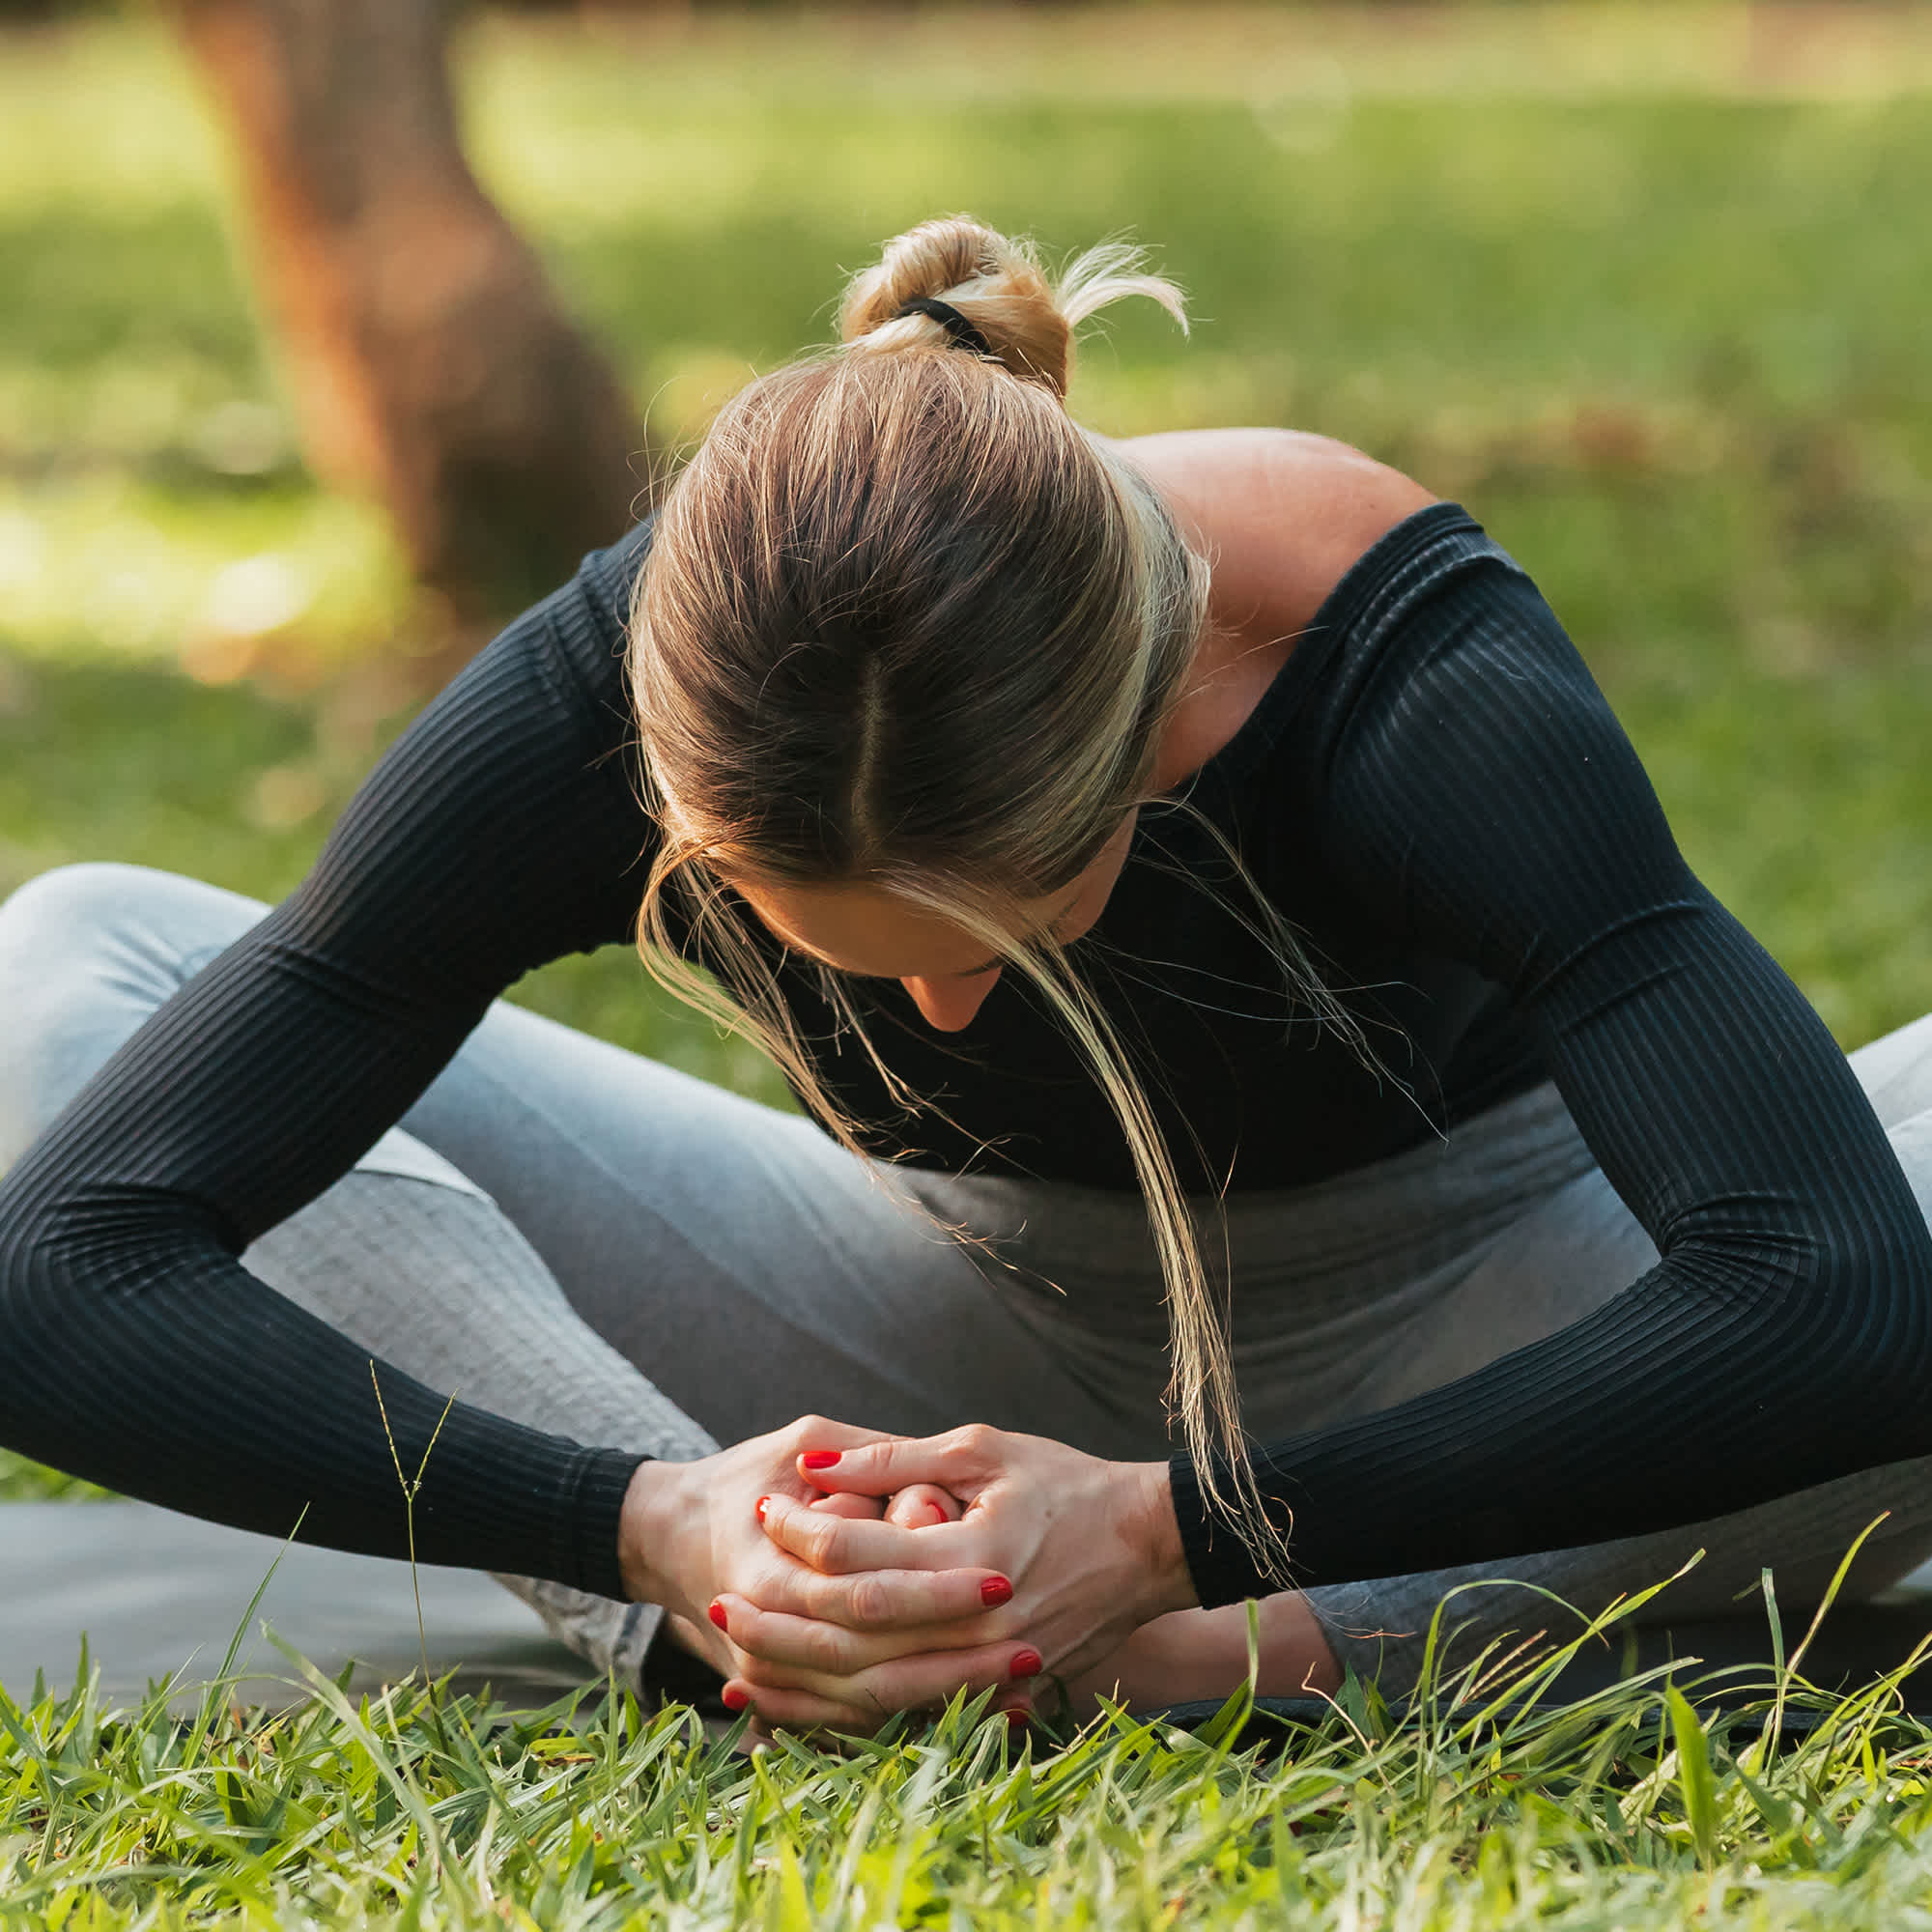 Esercizi di stretching per le anche da fare prima del workout | HiPRO